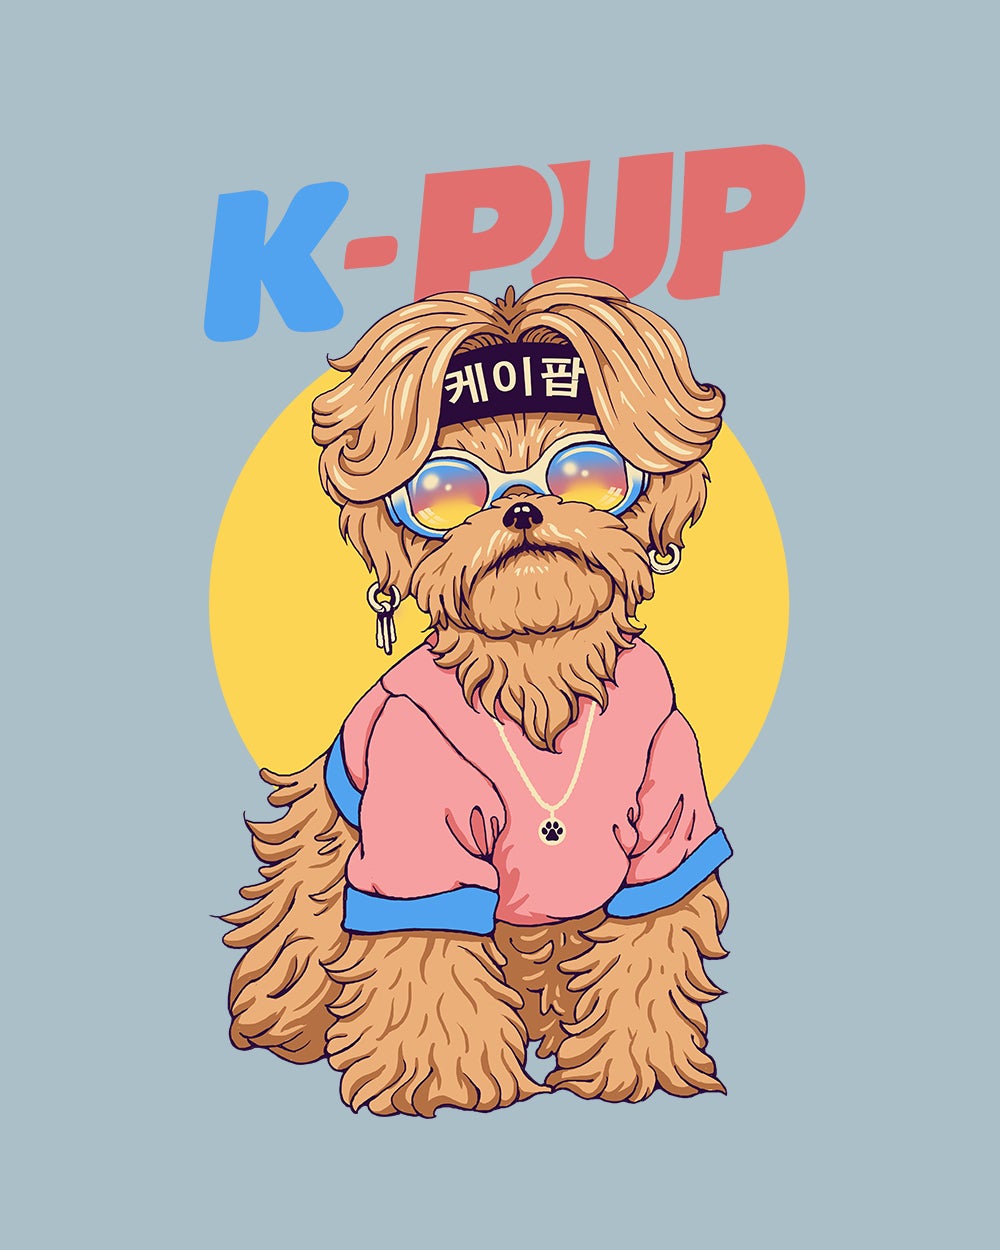 K-Pup Kids T-Shirt Australia Online #colour_pale blue